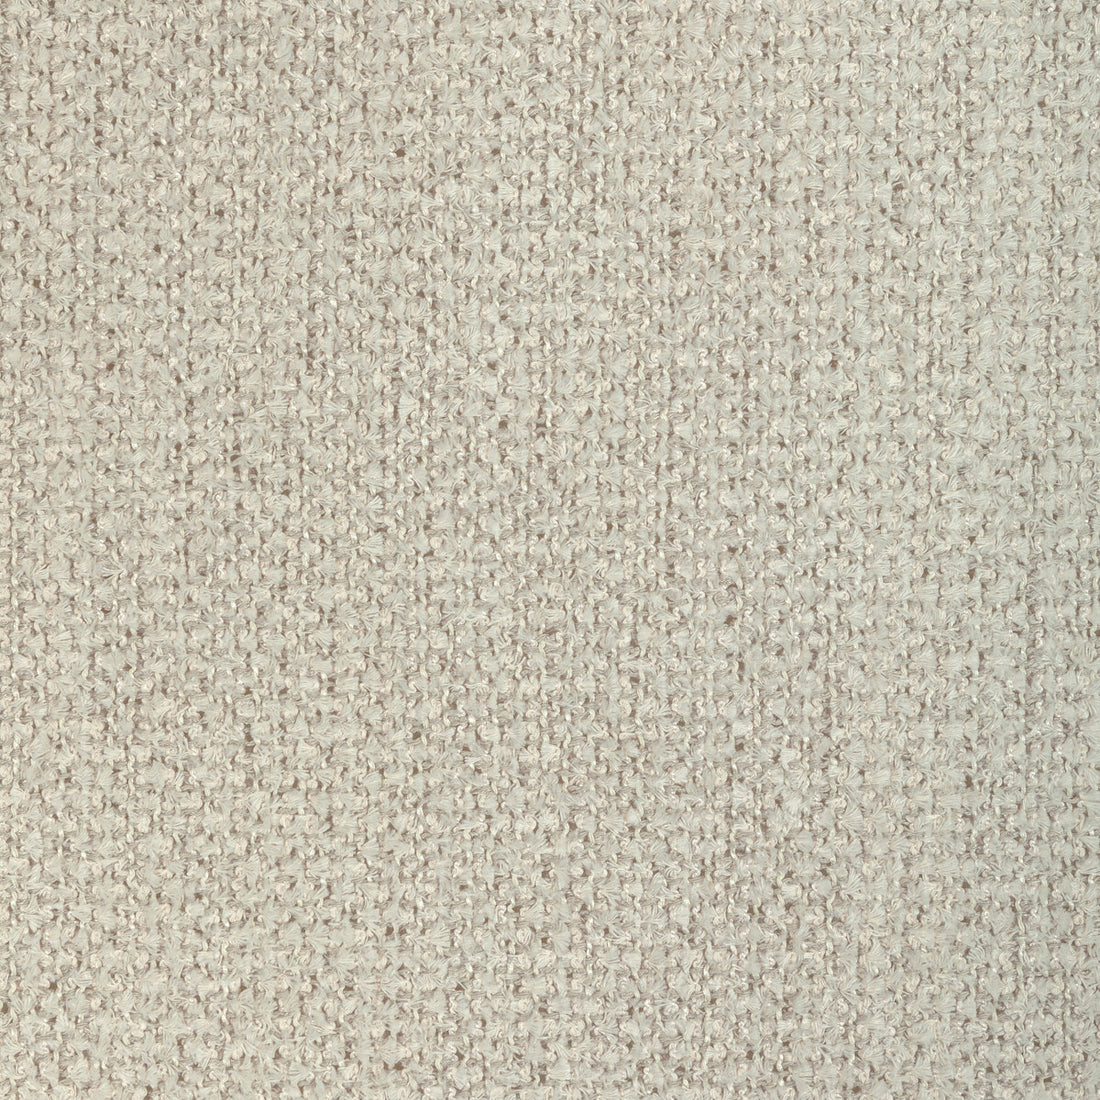 Kravet Design fabric in 4906-11 color - pattern 4906.11.0 - by Kravet Design